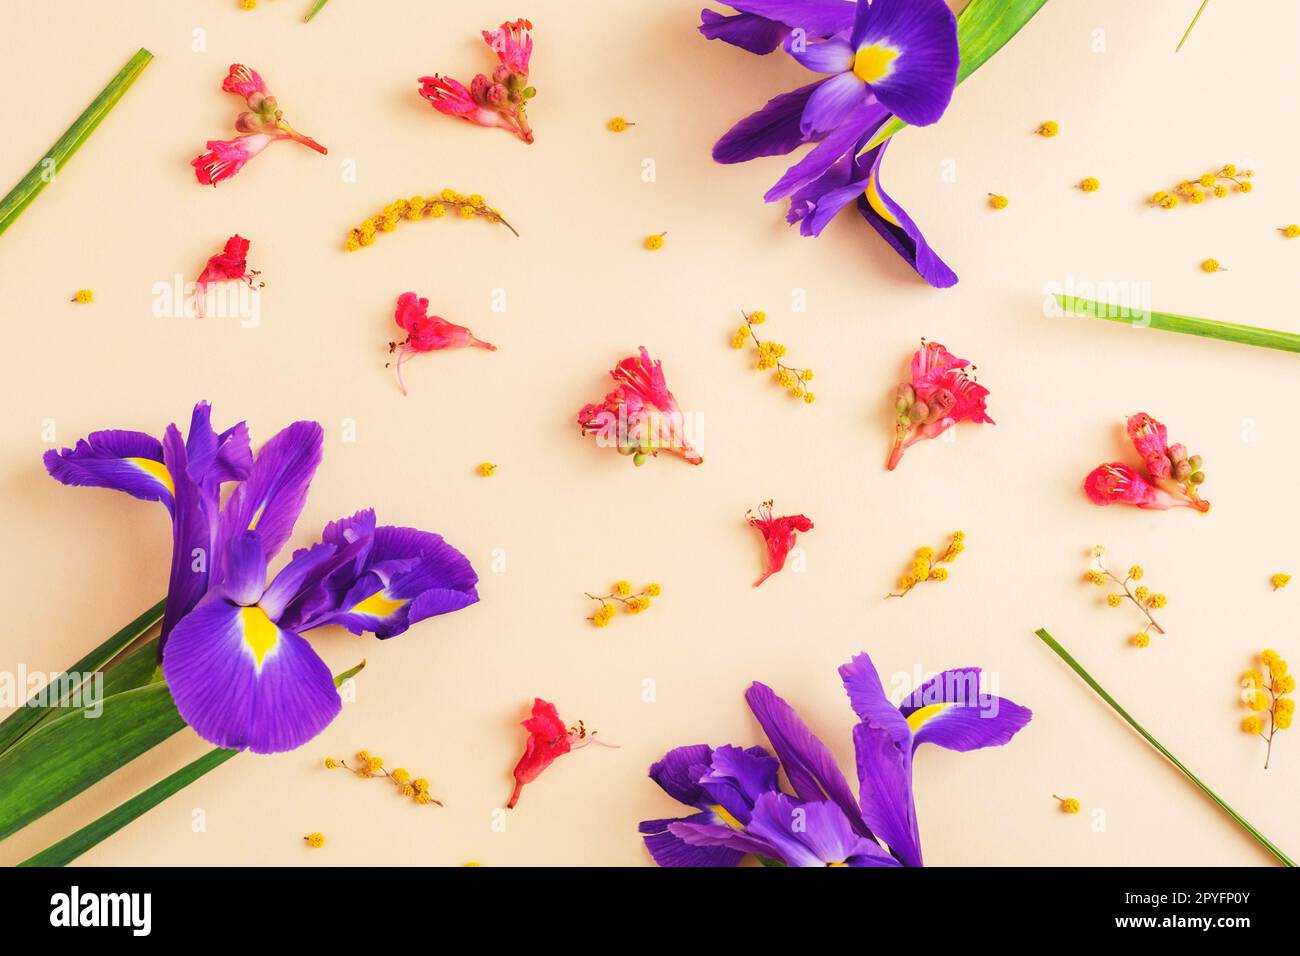 Muster mit lila Irisblüten, Mimosa und roter Rosskastanienblüte auf neutralem Hintergrund. Draufsicht, flach liegend. Stockfoto